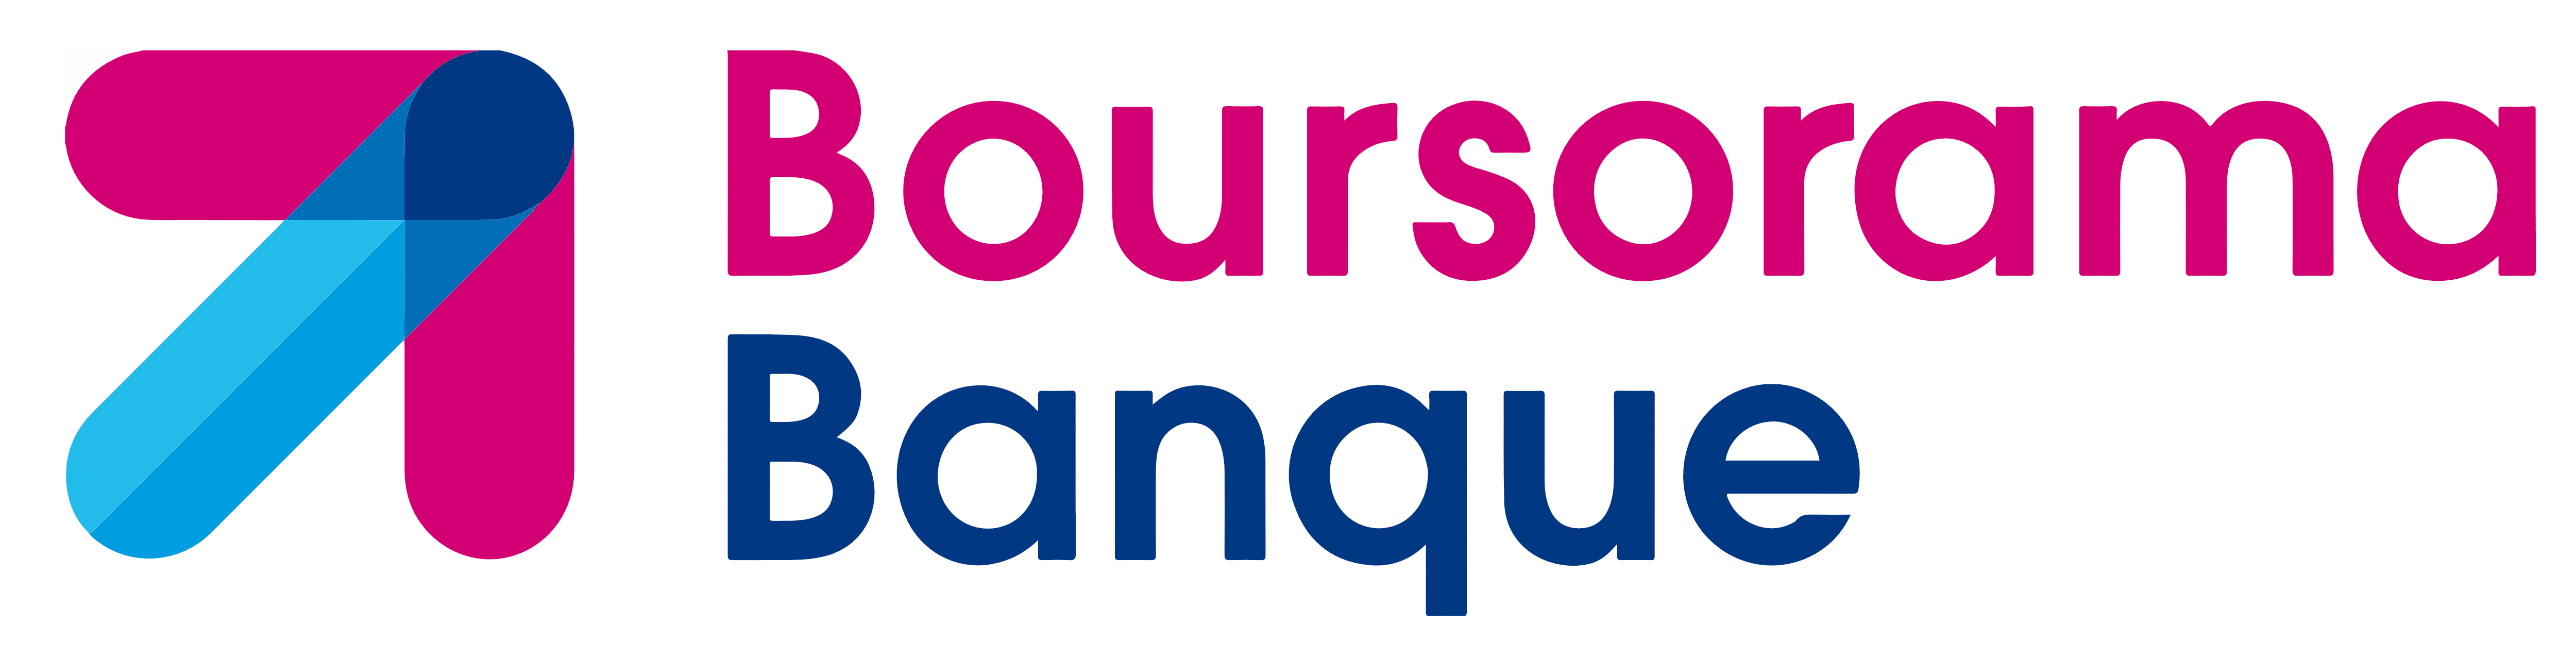 Boursorama Brand Logo